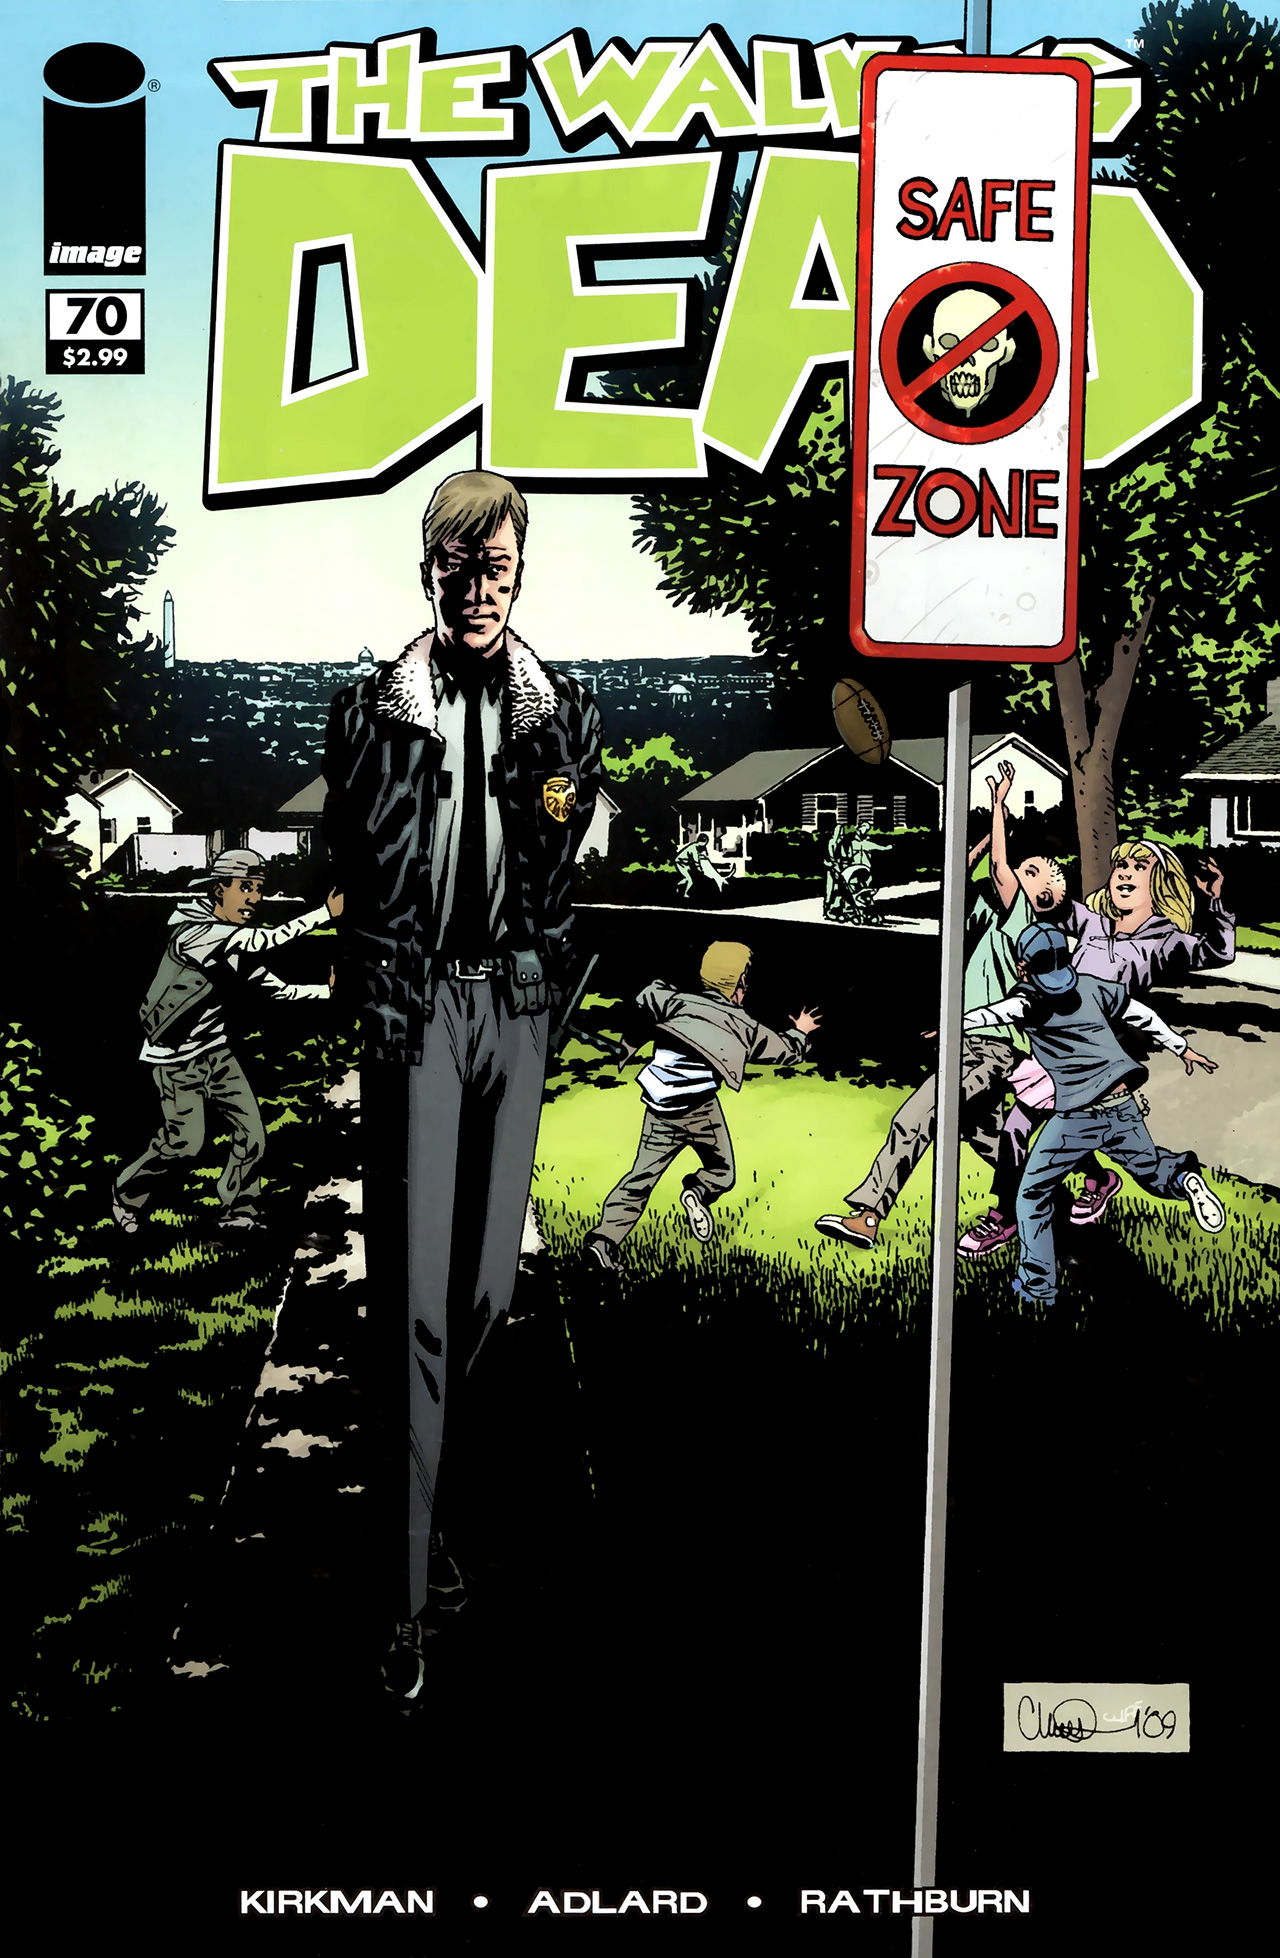 The Walking Dead Vol. 1 #70